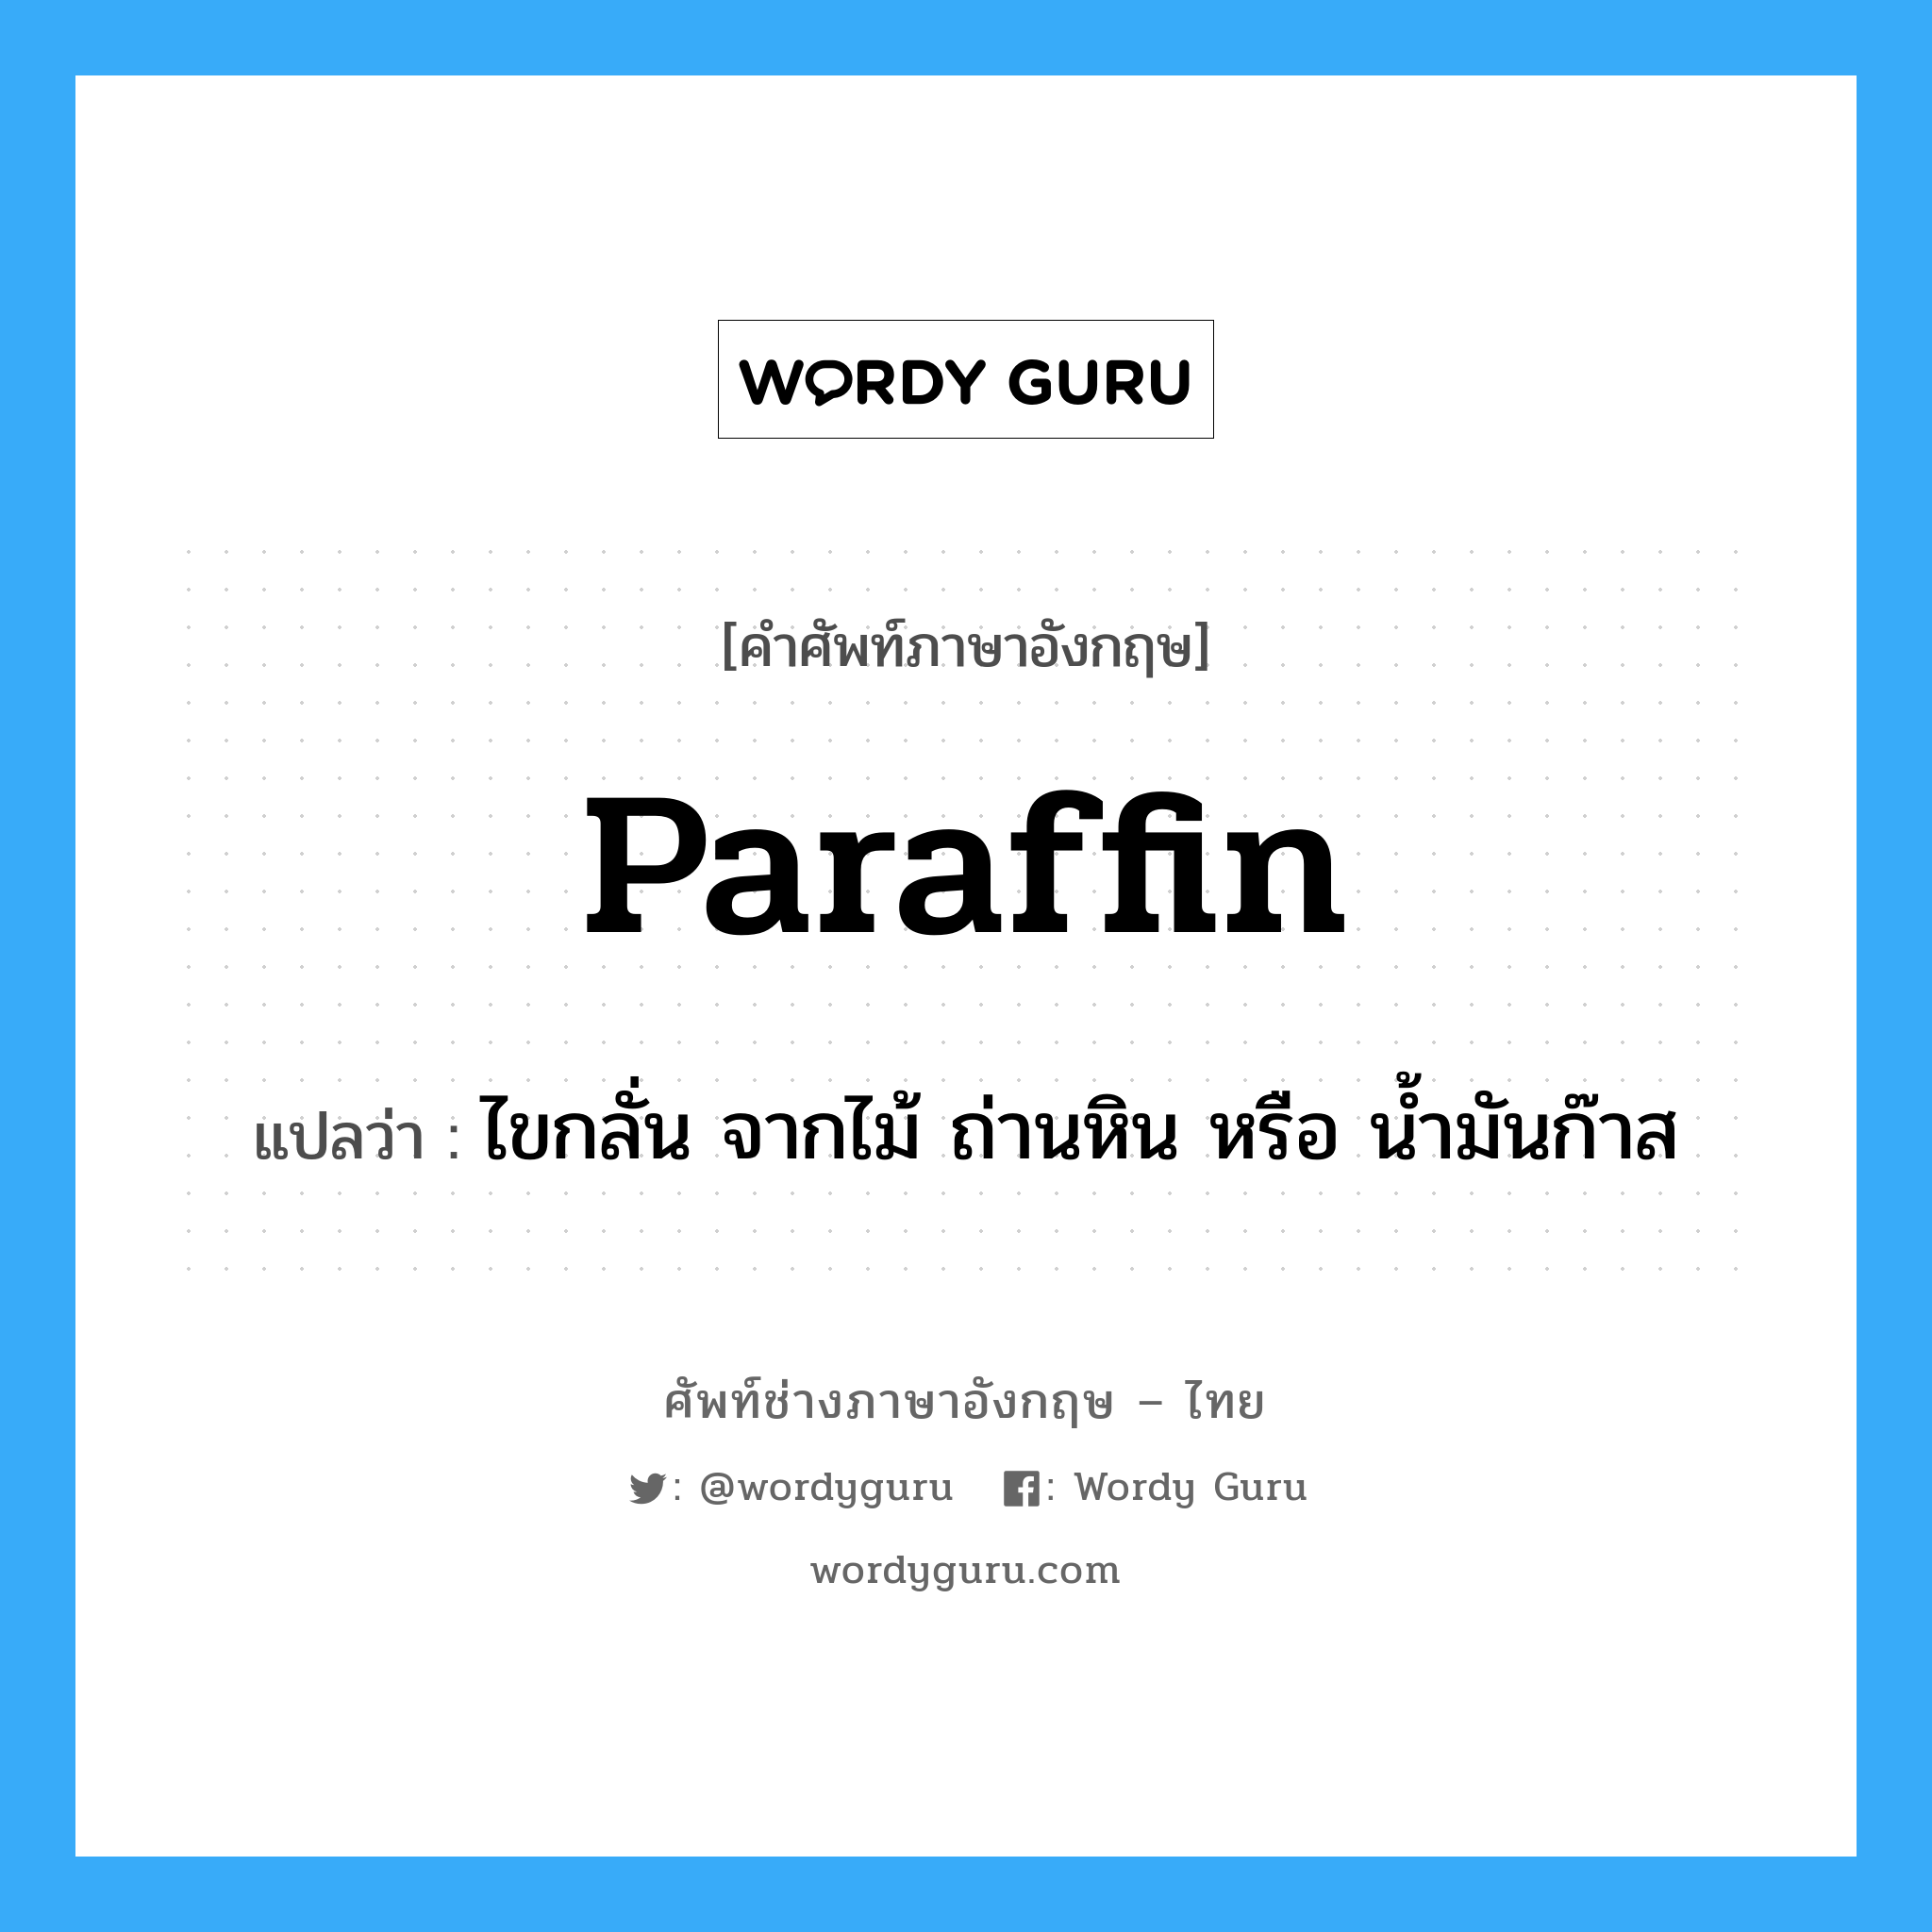 paraffin แปลว่า?, คำศัพท์ช่างภาษาอังกฤษ - ไทย paraffin คำศัพท์ภาษาอังกฤษ paraffin แปลว่า ไขกลั่น จากไม้ ถ่านหิน หรือ น้ำมันก๊าส